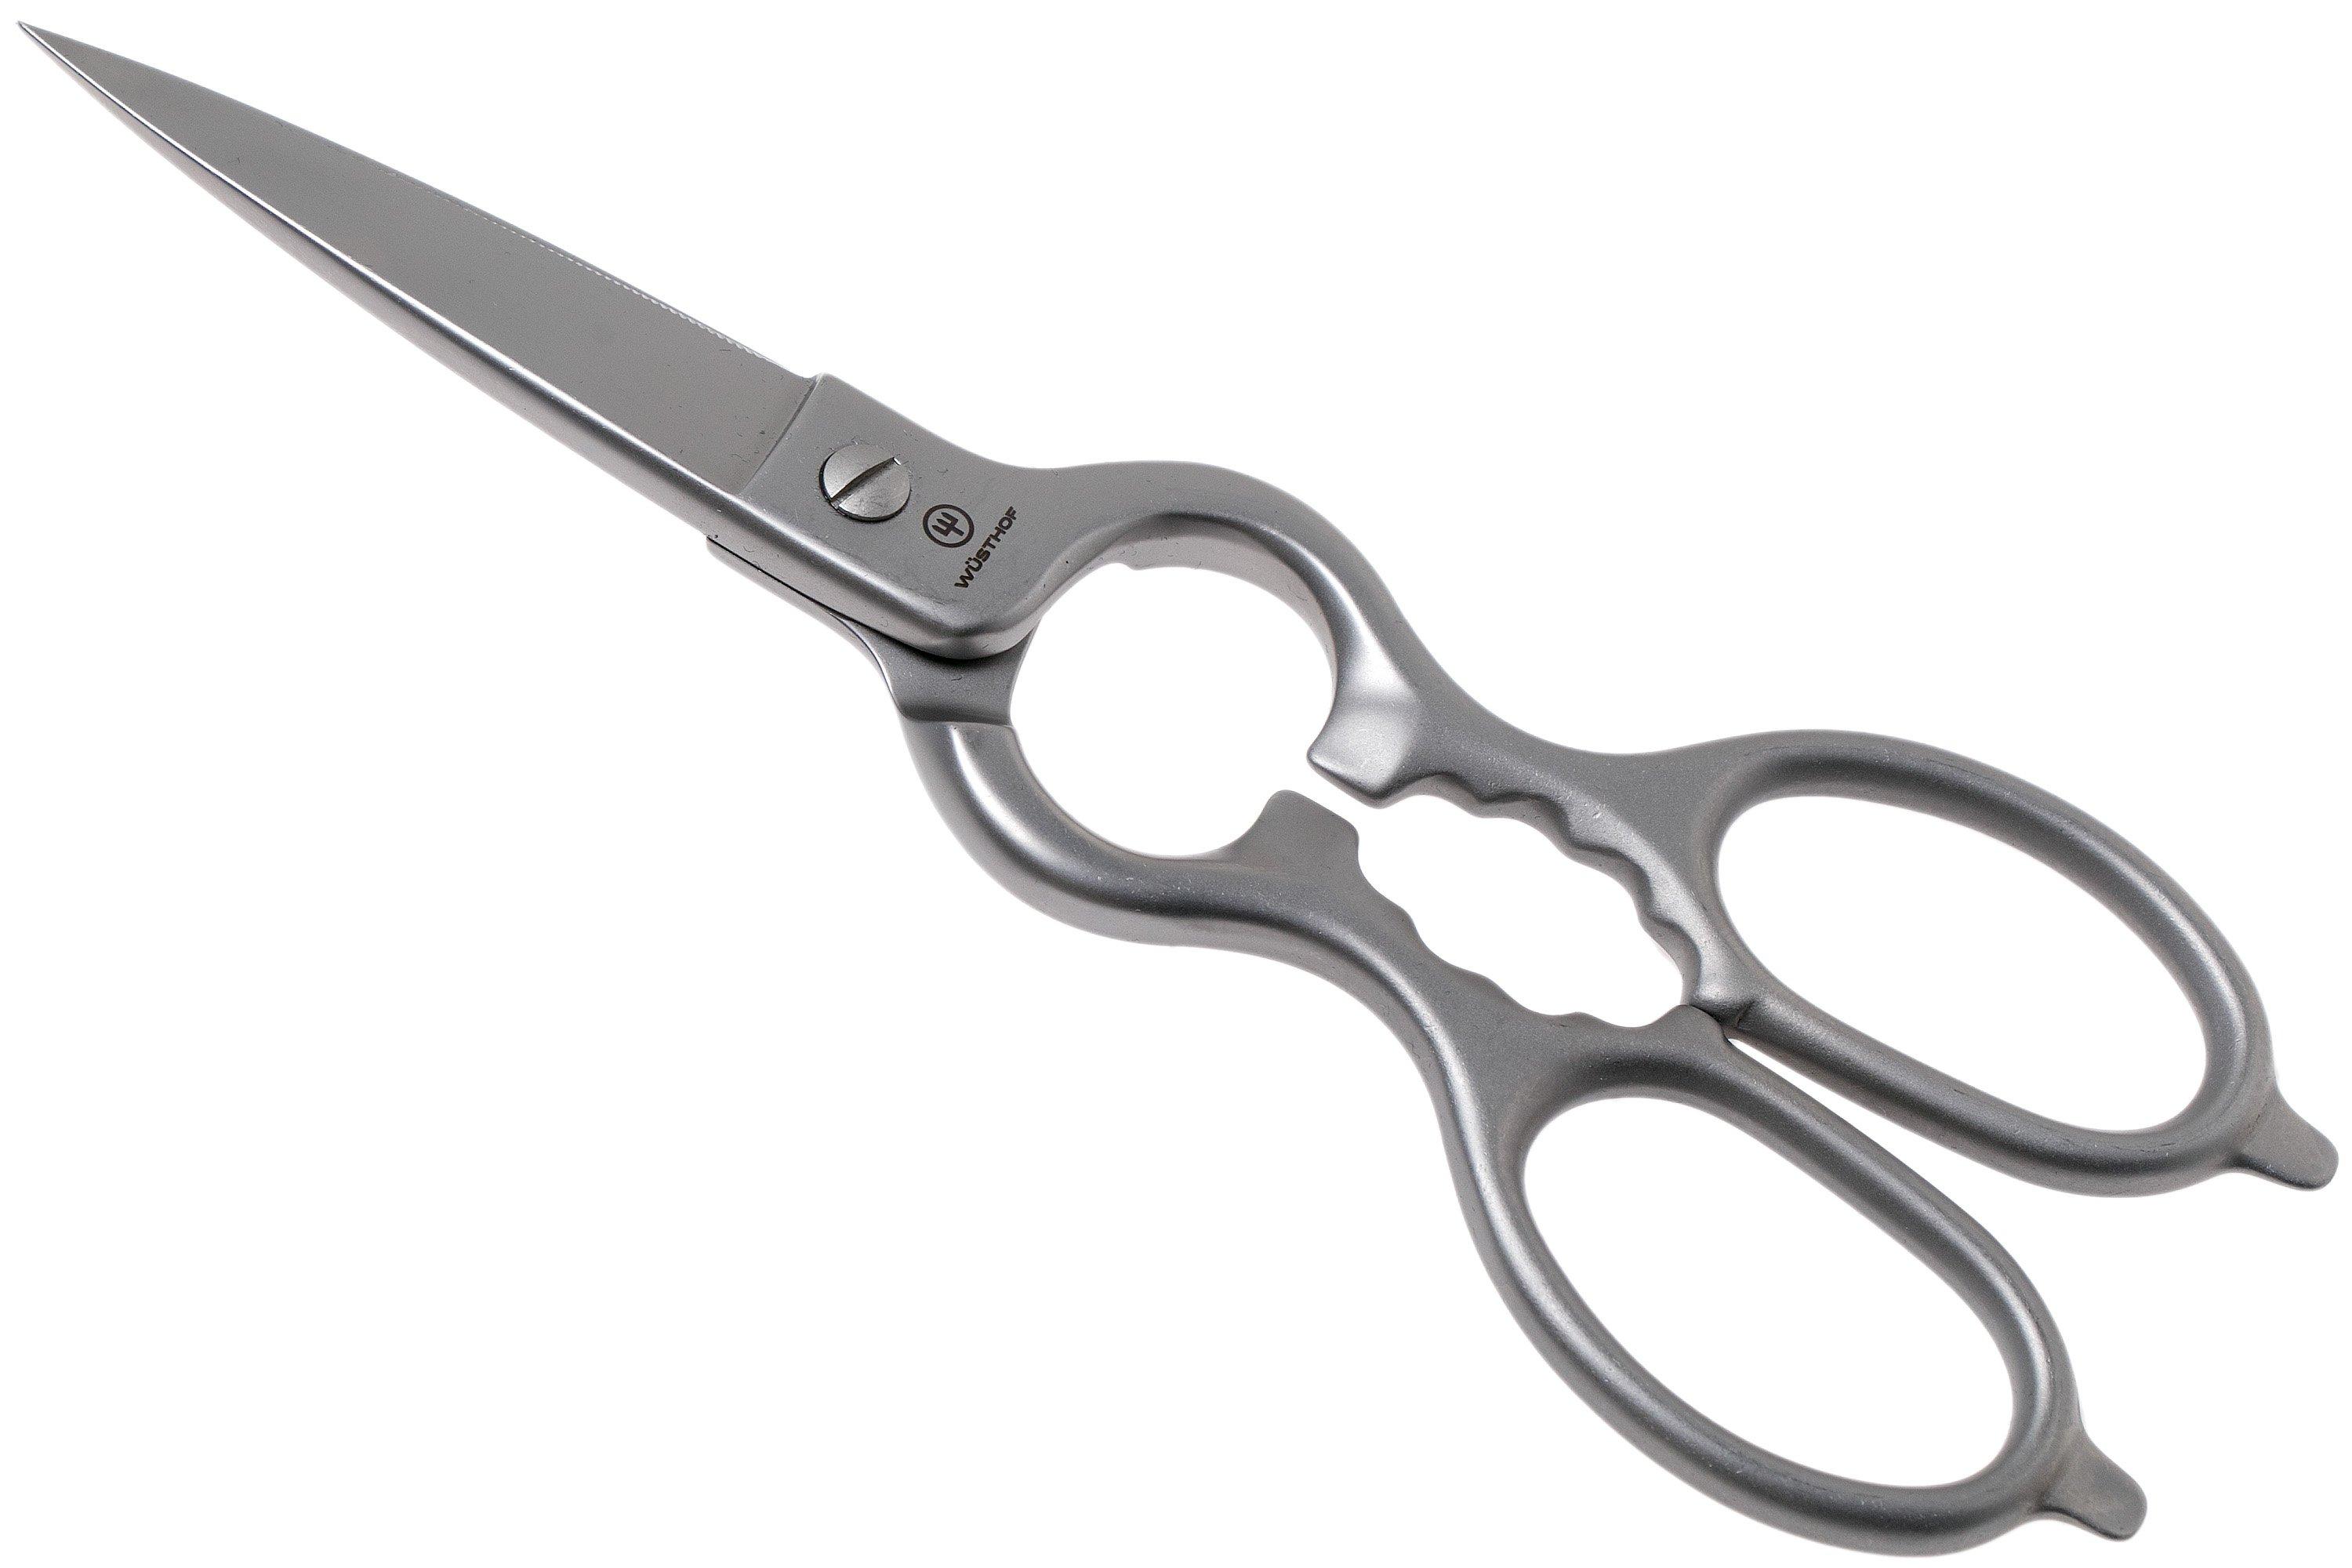 Wüsthof 1059594905 kitchen scissors